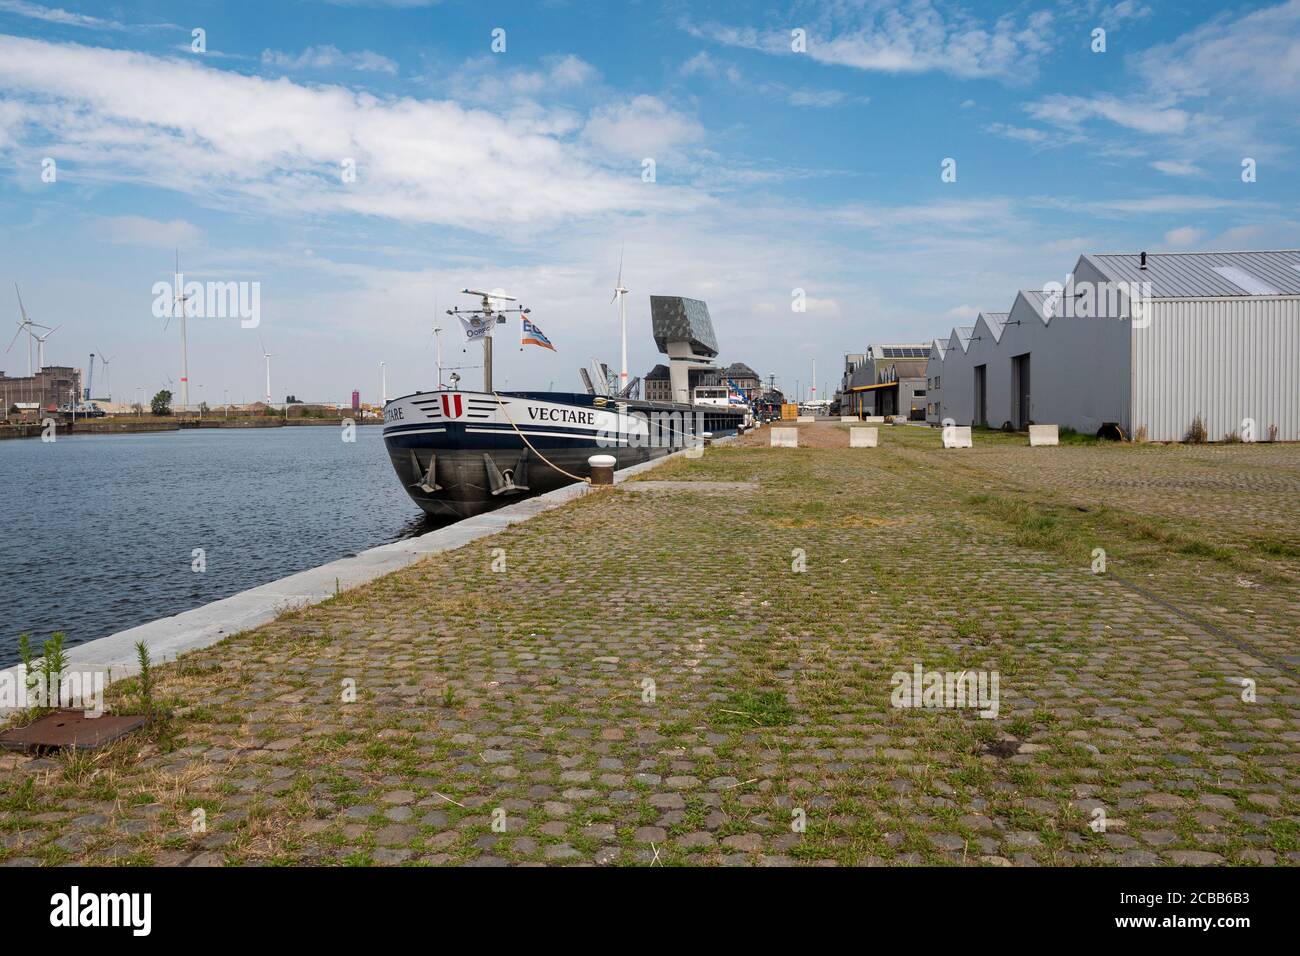 Anversa, Belgio, 19 luglio 2020, ormeggiata barca nel molo chiamato Kattendijkdok con il porto di Anversa sullo sfondo Foto Stock